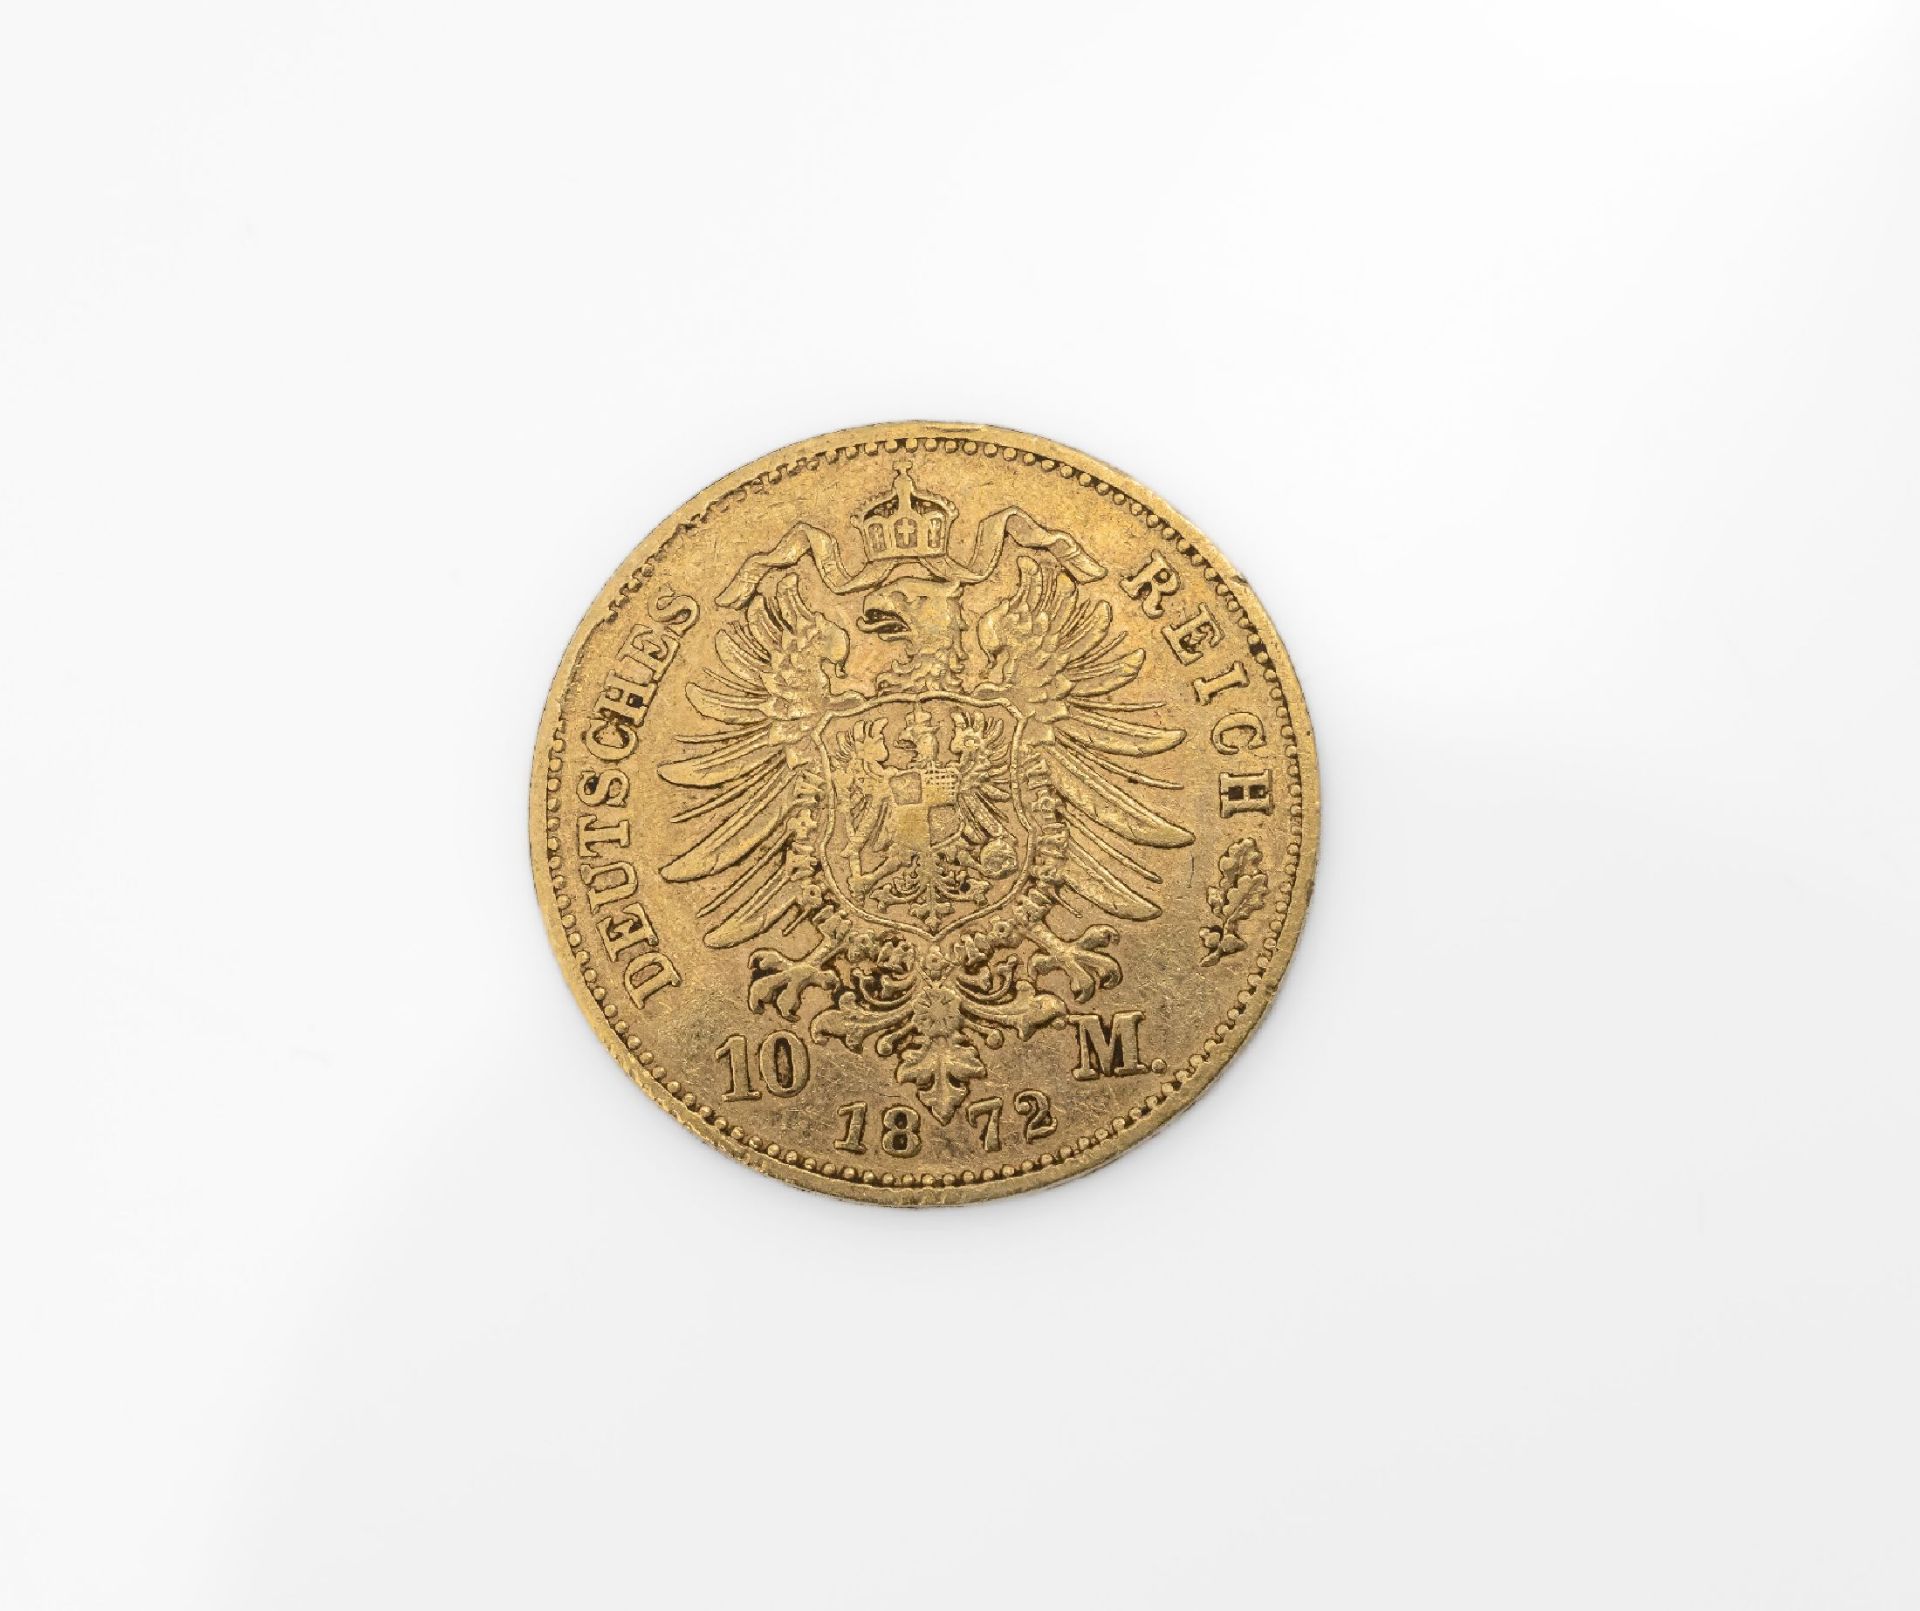 Goldmünze 10 Mark Deutsches Reich 1872, Ludwig II. König - Image 2 of 2